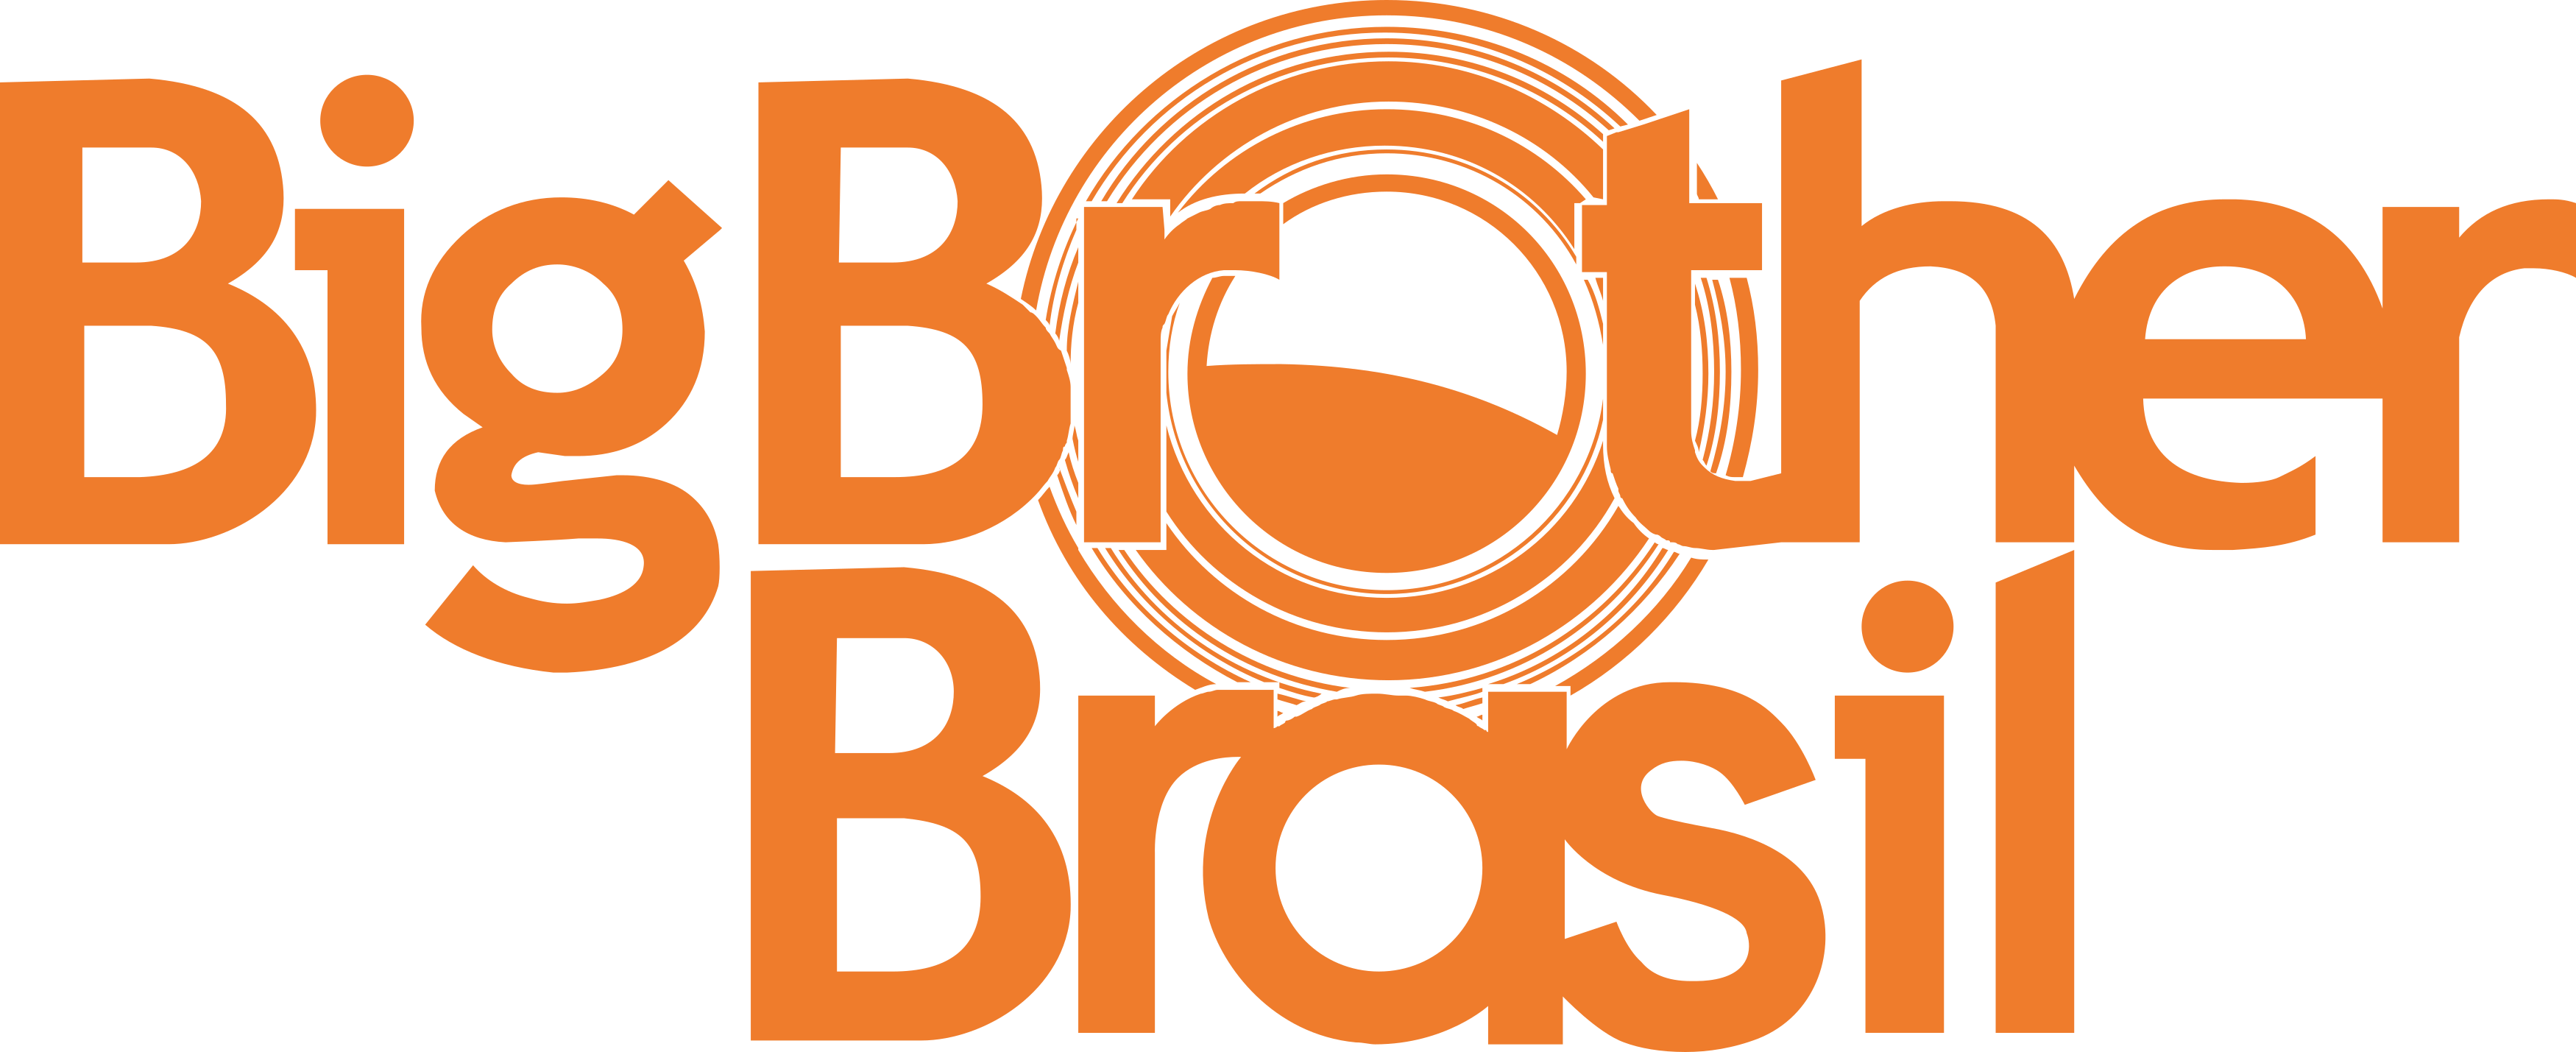 bbb-logo-big-brother-brasil-logo.png